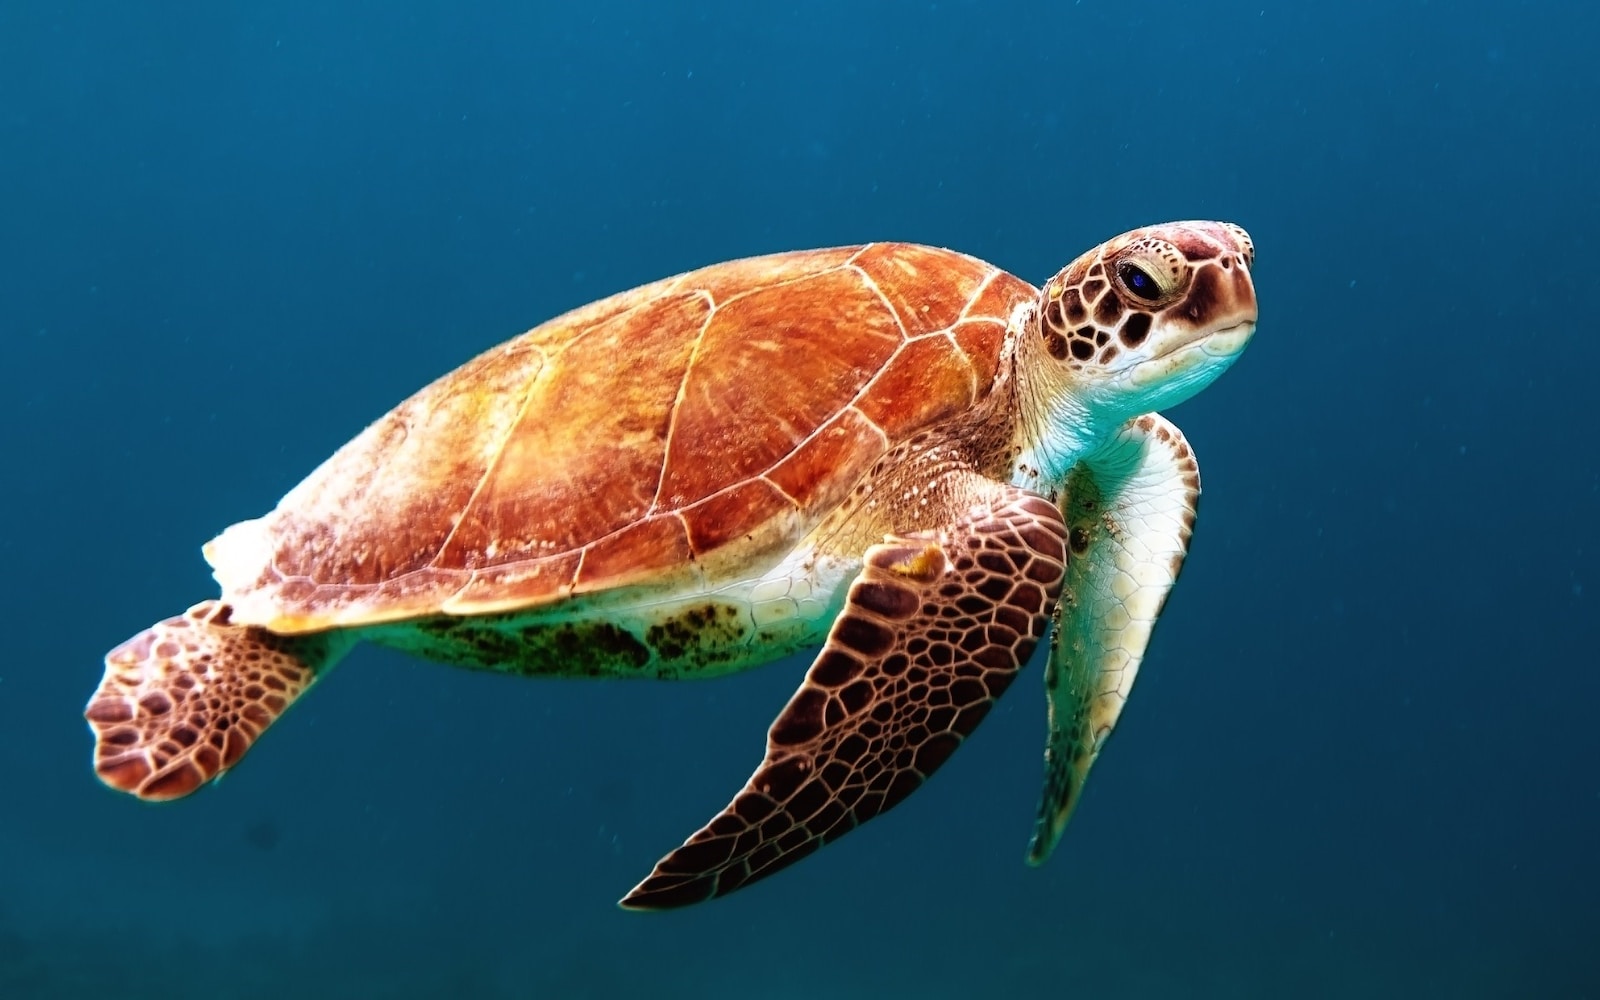 La tortue étoilée de Madagascar : une espèce menacée